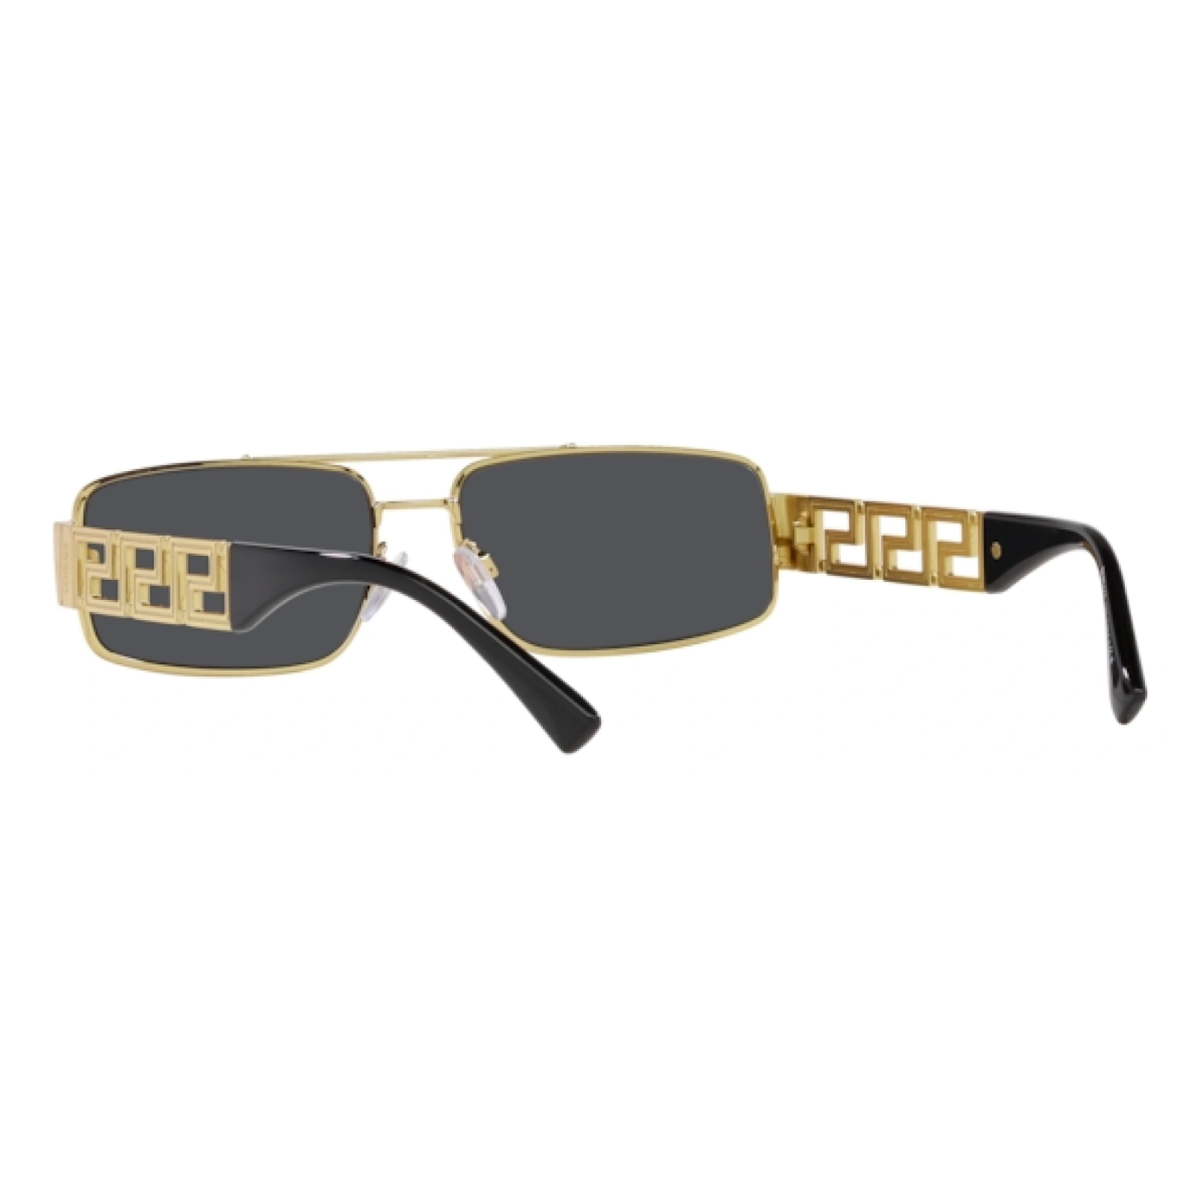 "1. Stylish Versace 2257 1002/87 Sunglasses for Men at Optorium. Dark grey lenses, gold and black metal frame. AT OPTORIUM"